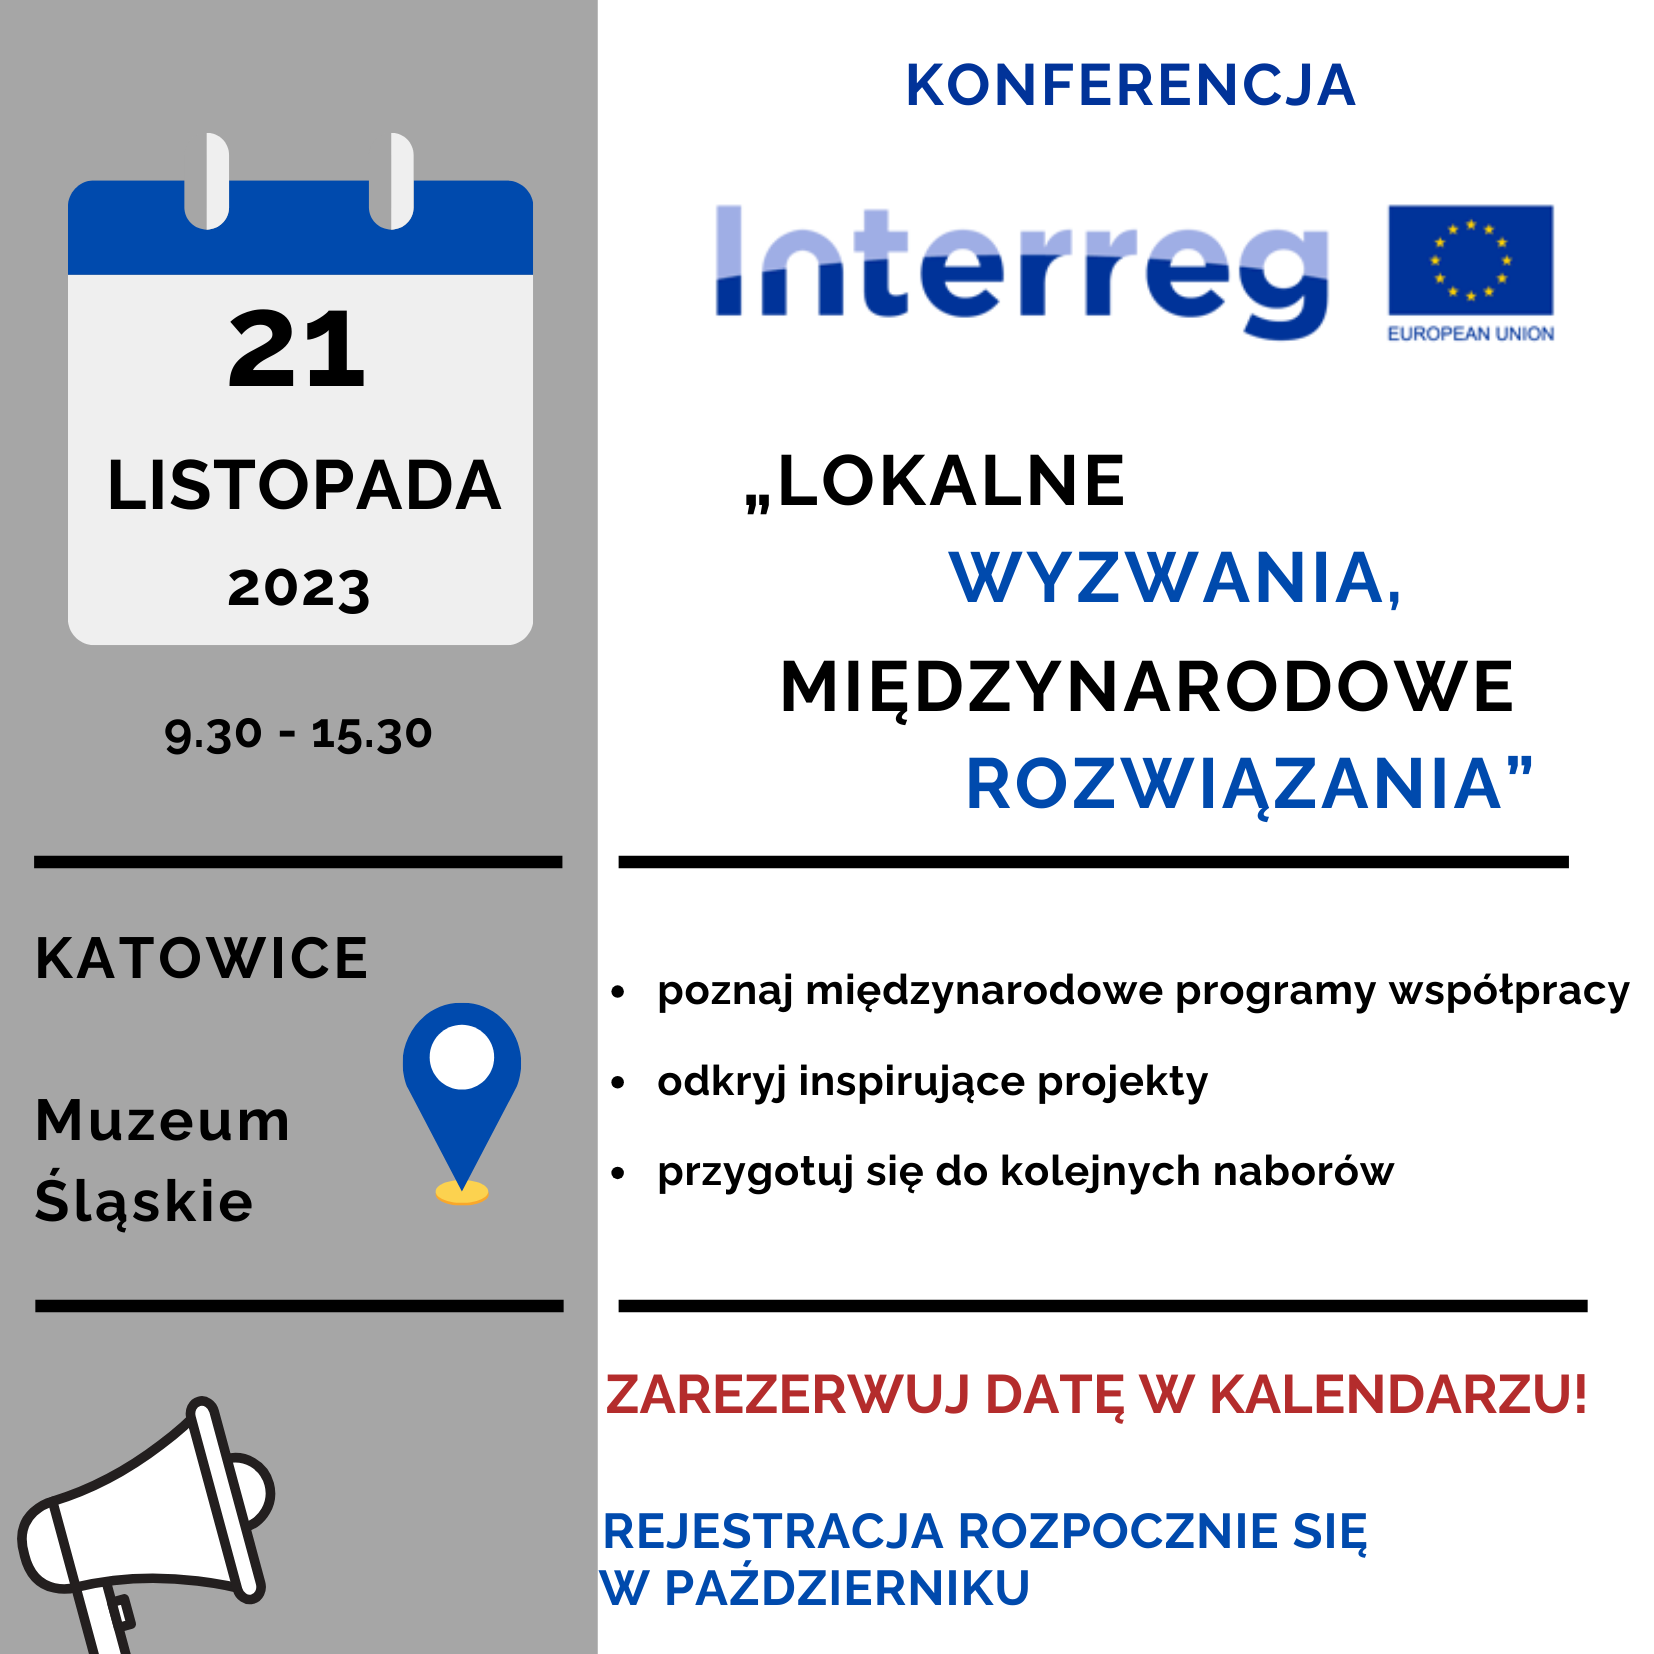 Zarezerwuj datę 21 listopada 2023 r. - konferencja o programach Interreg w Katowicach. Rejestracja zostanie uruchomiona w październiku.